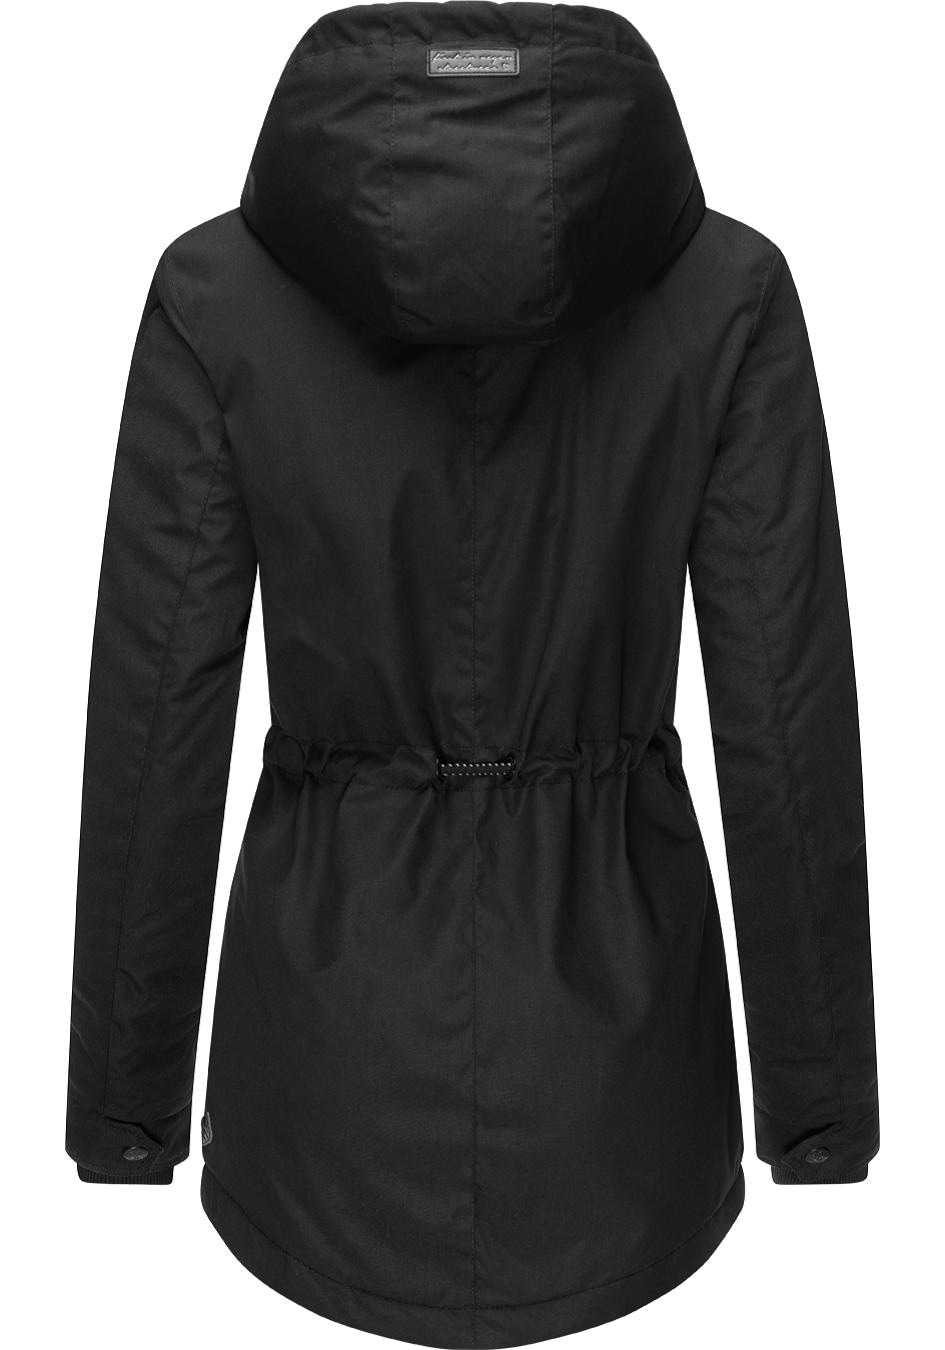 Winterjacke mit stylischer für »Monadis online kalte Jahreszeit Kapuze, Black Winterparka Ragwear Label«, die